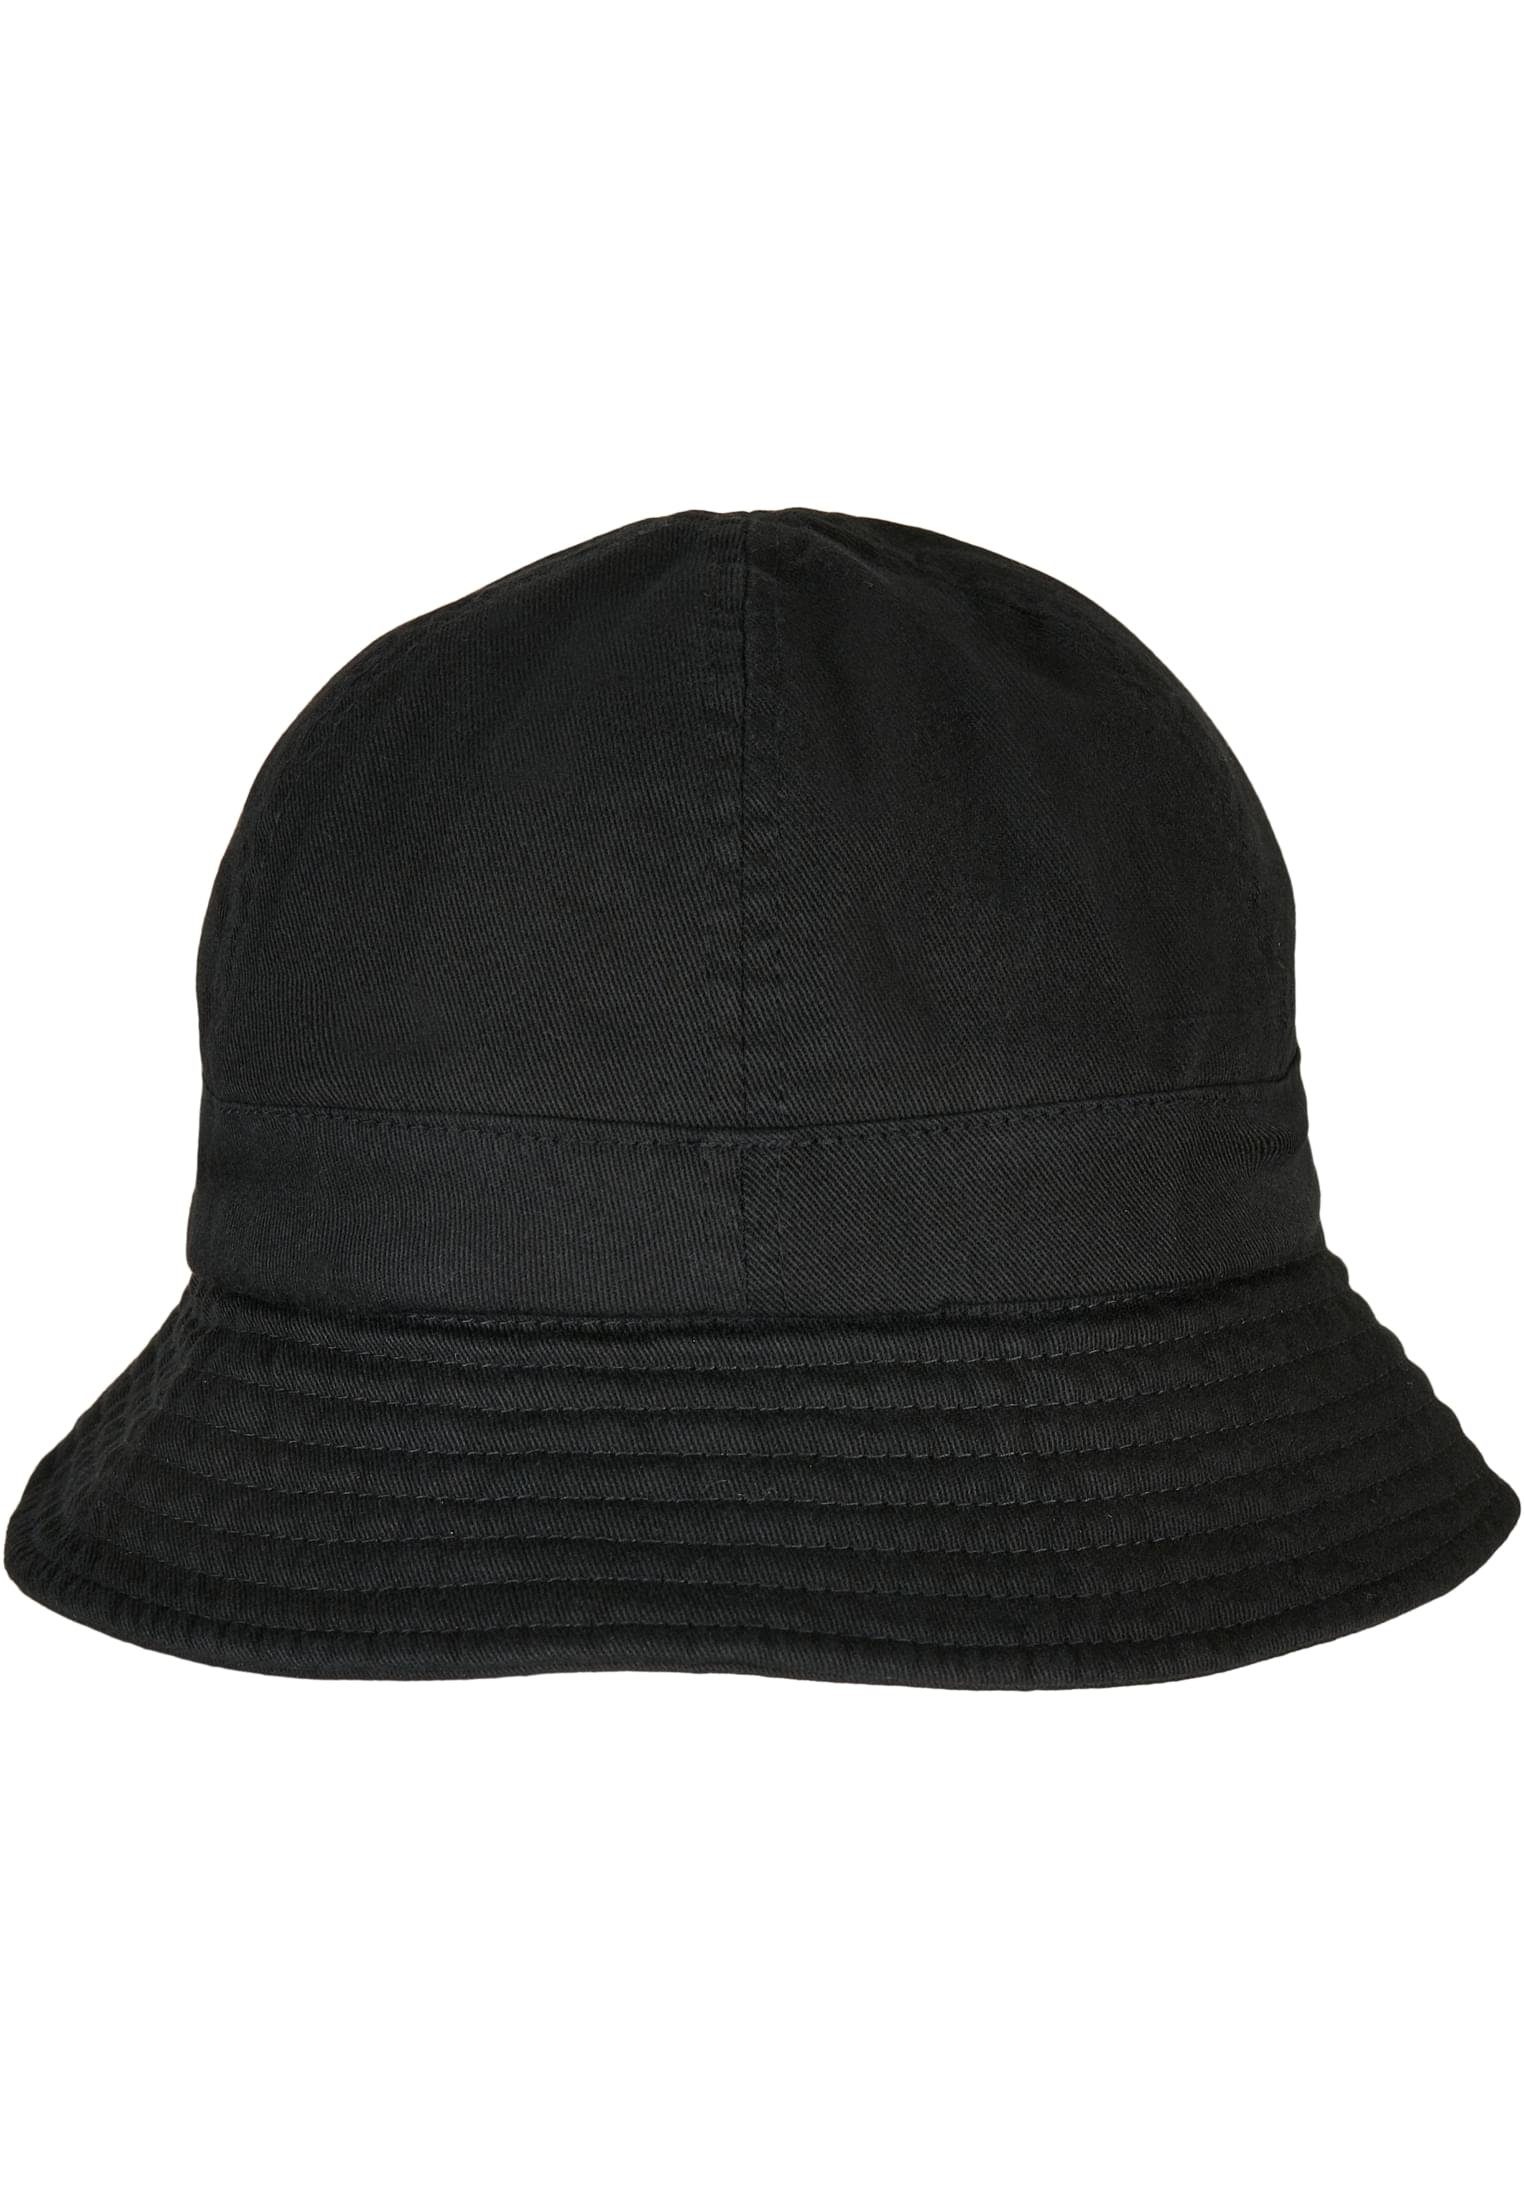 Tennis Flexfit Hat black Cap Flex Flexfit Accessoires Washing Eco Notop